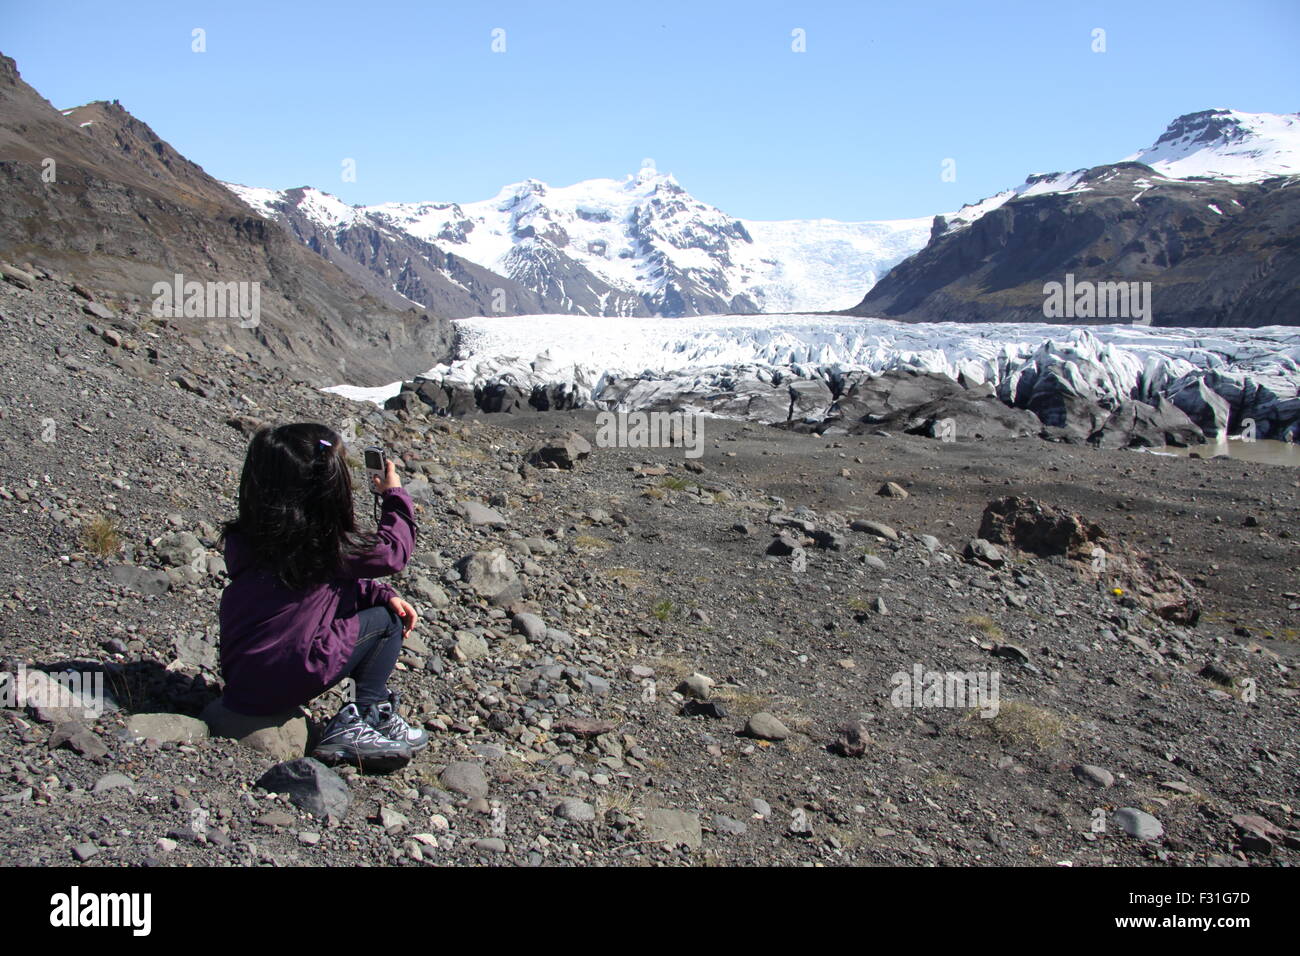 Jeune fille en prenant une photo de la fonte des glaciers de l'arm, Hvannadalshnúkur Öraefajökull volcan en Islande. Banque D'Images